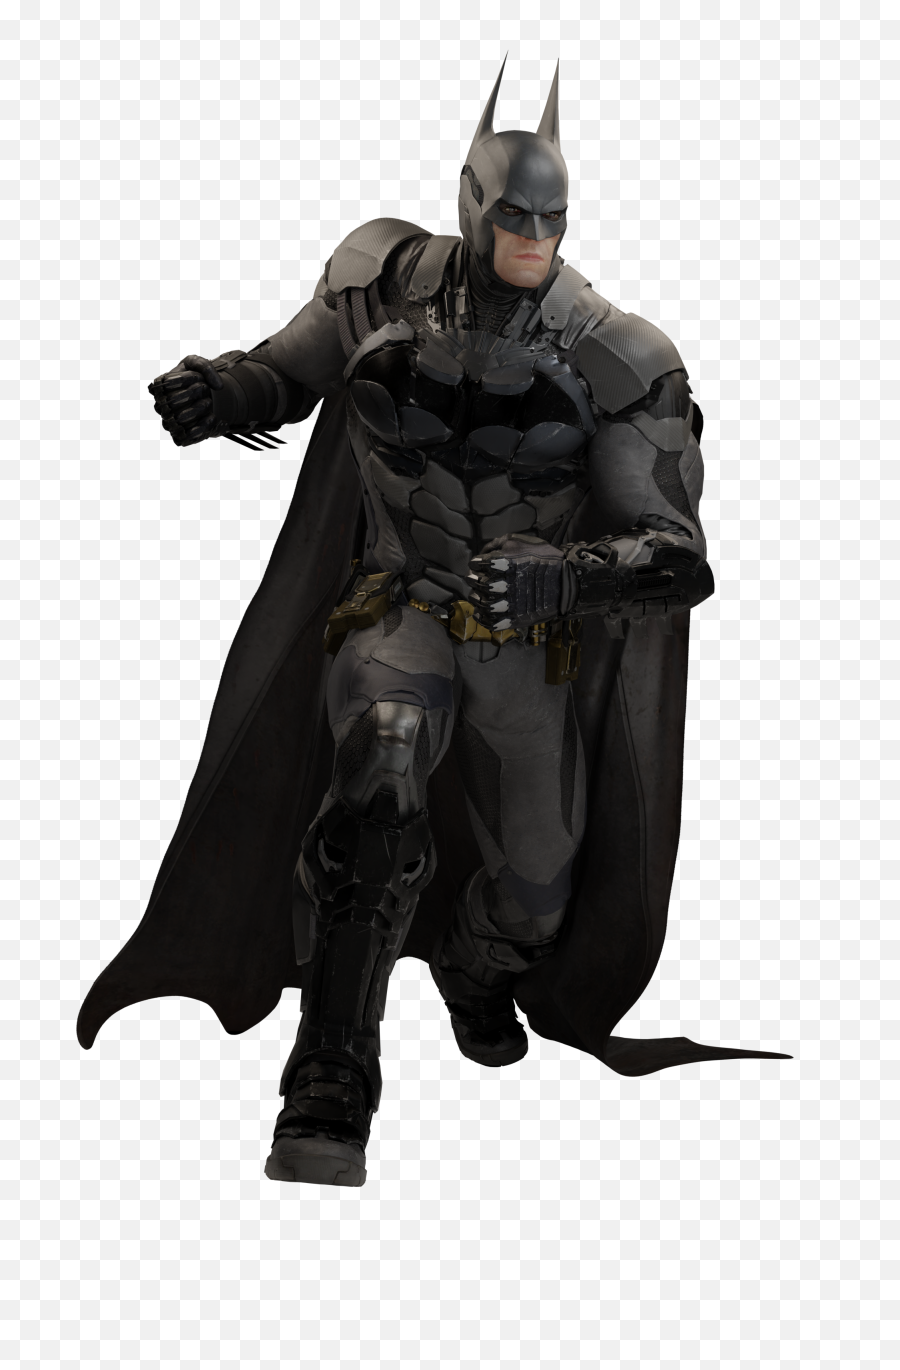 Dceu Batman Vs Cw Deathstroke - Batman Full Body Png,Deathstroke Png